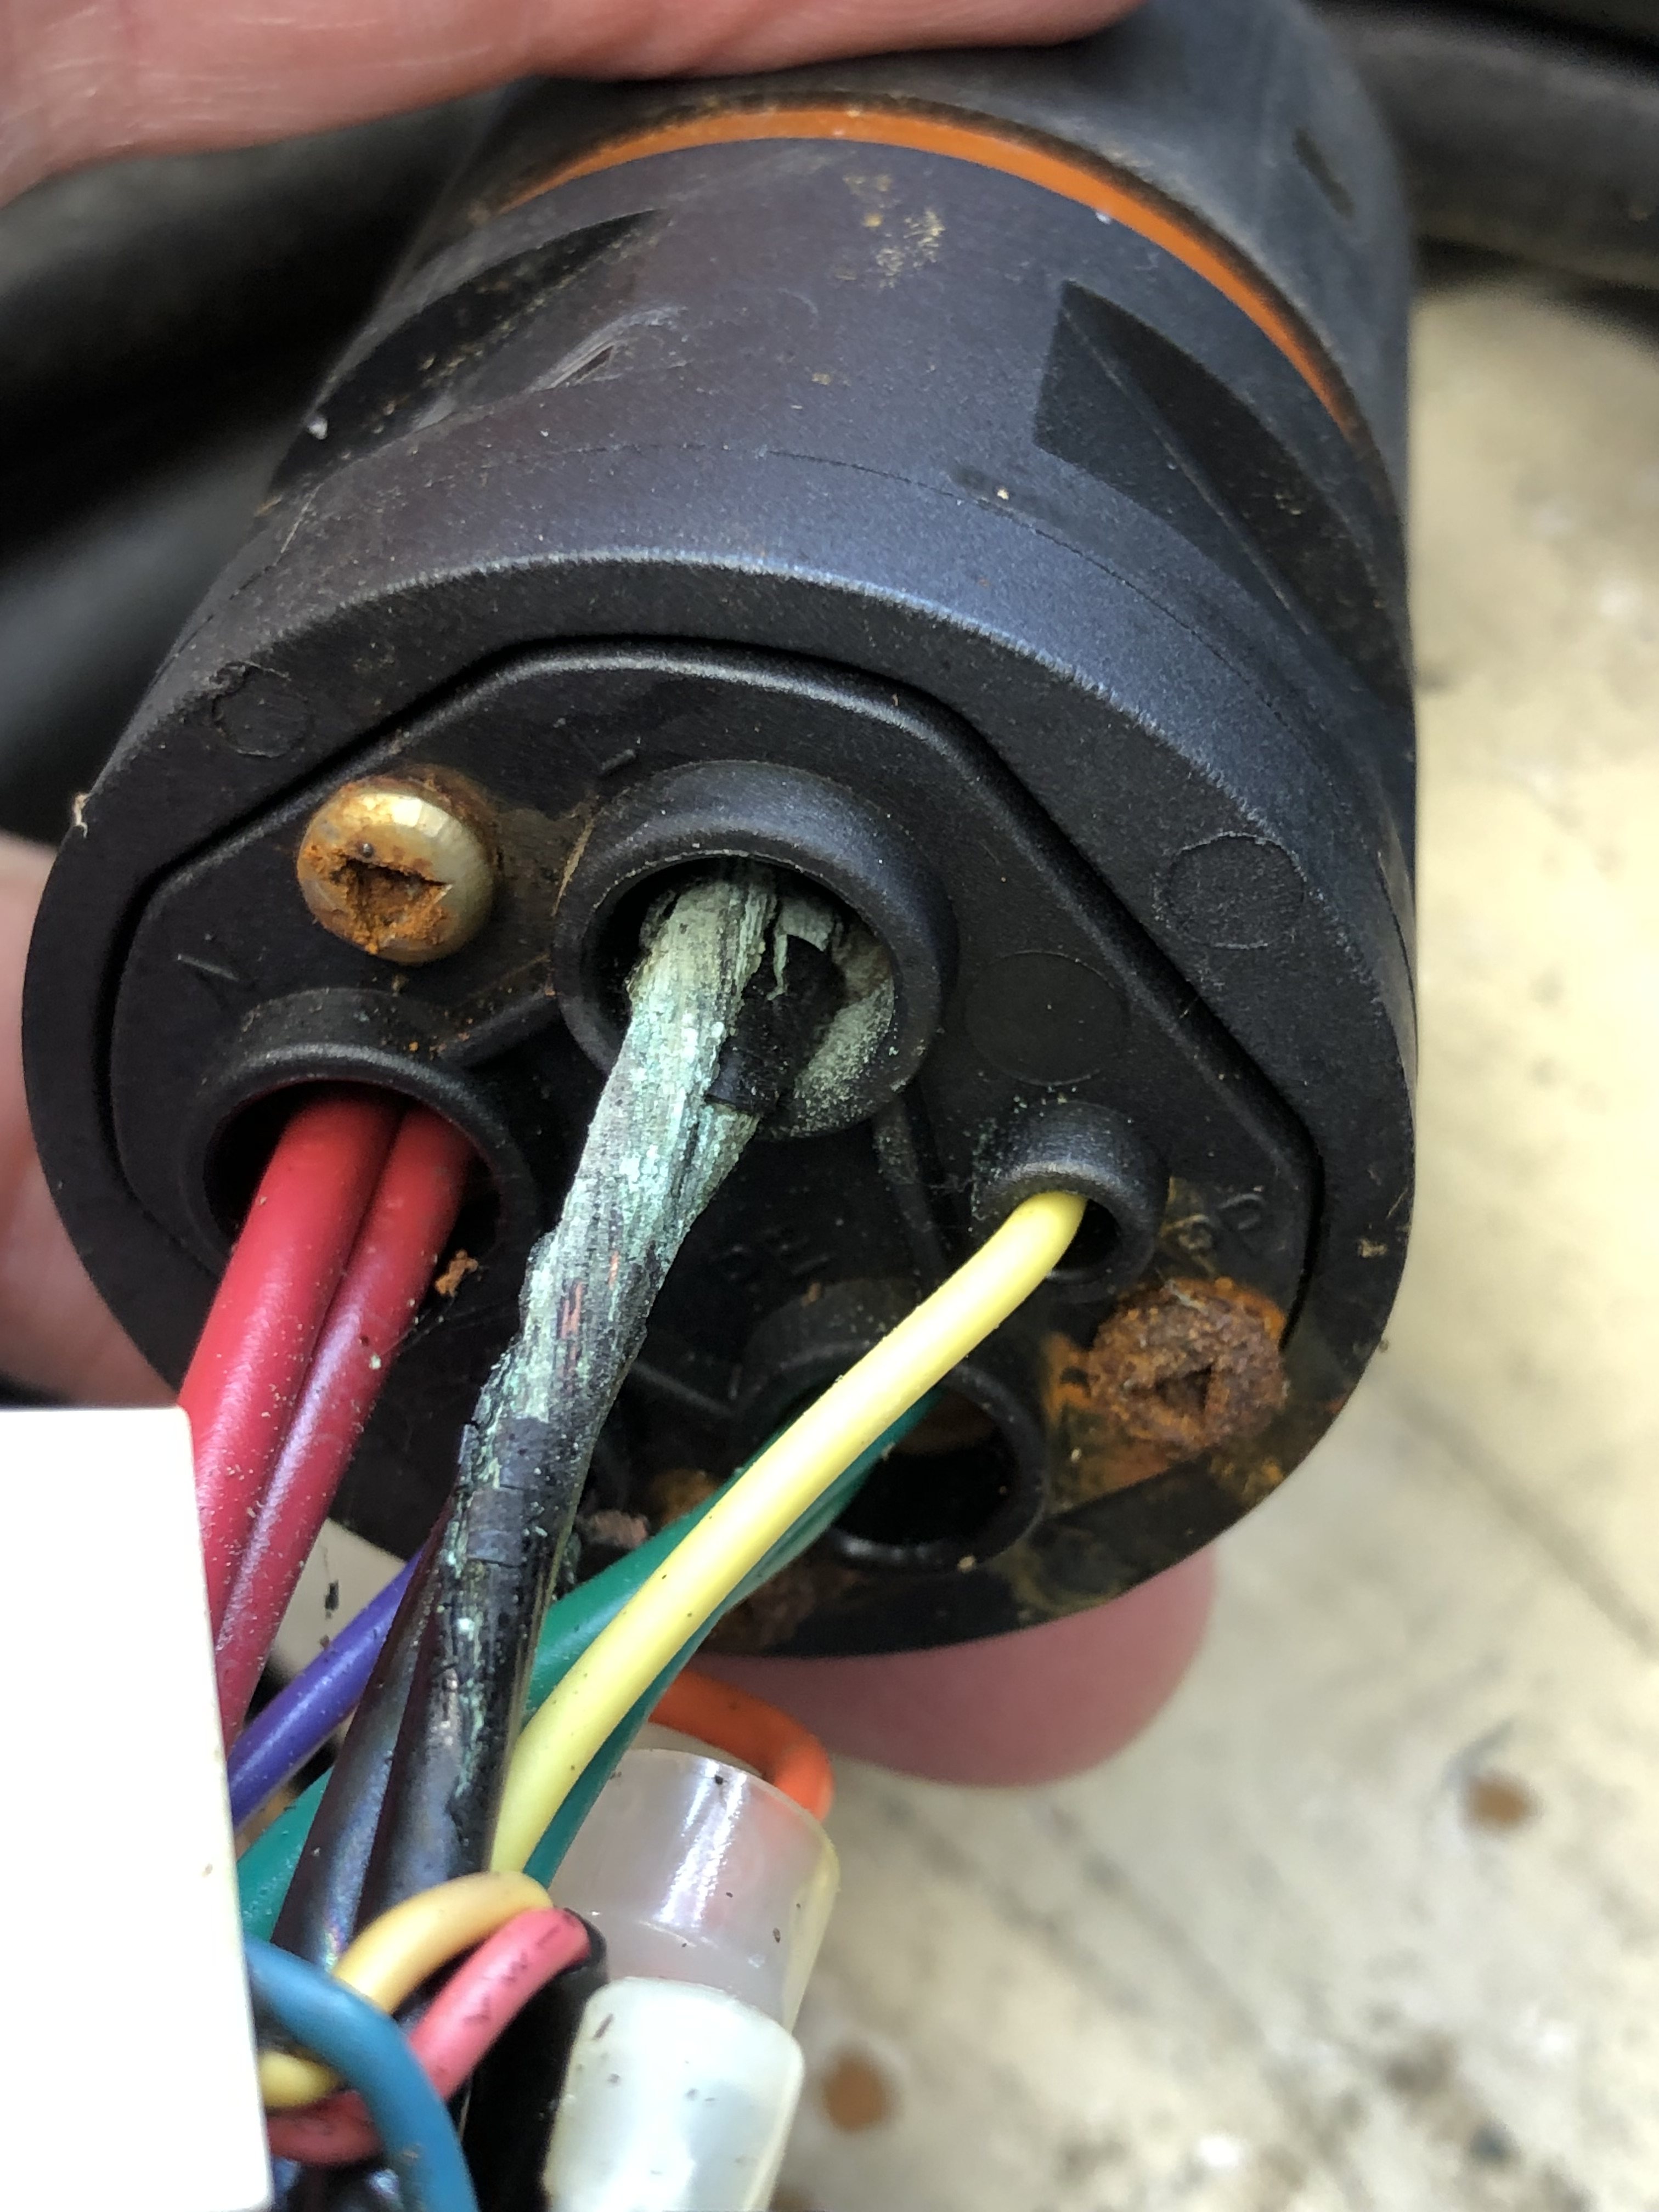 J-Plug failed crimp connection